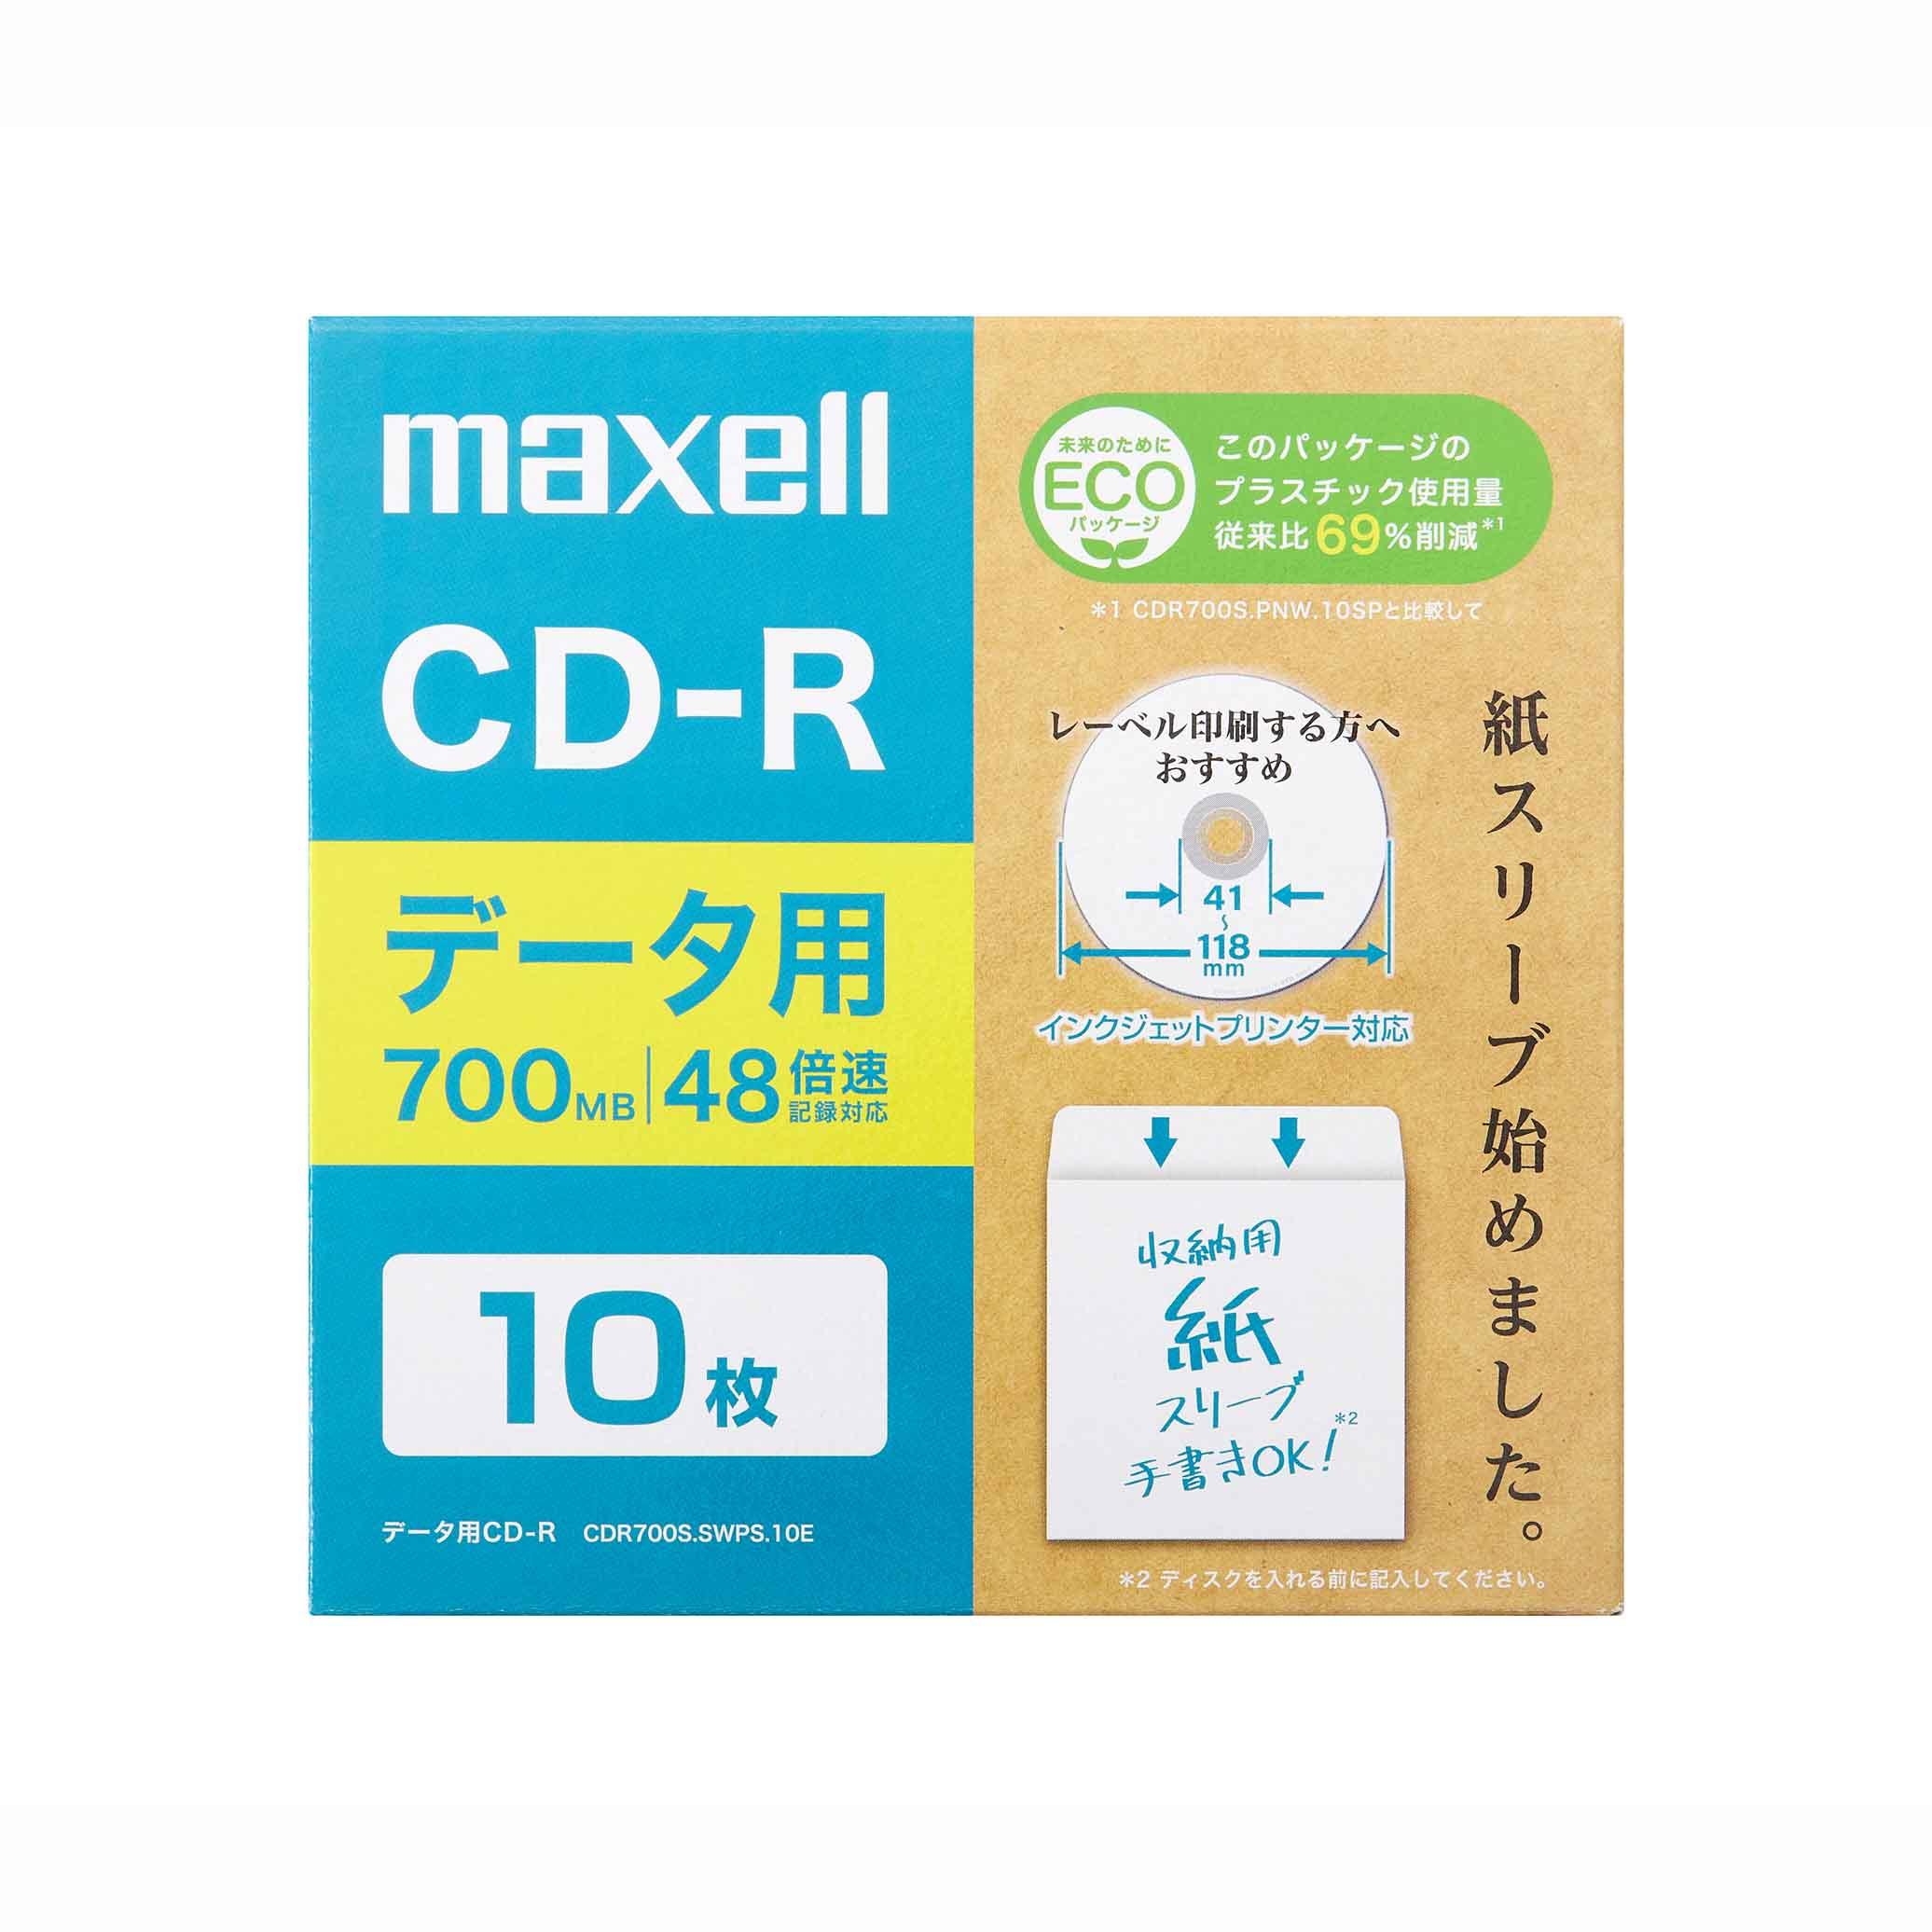 ☆最安値に挑戦 maxell データ用 CD-R 700MB 48倍速対応 インクジェットプリンタ対応ホワイト ワイド印刷 20枚 5mmケース入  CDR70